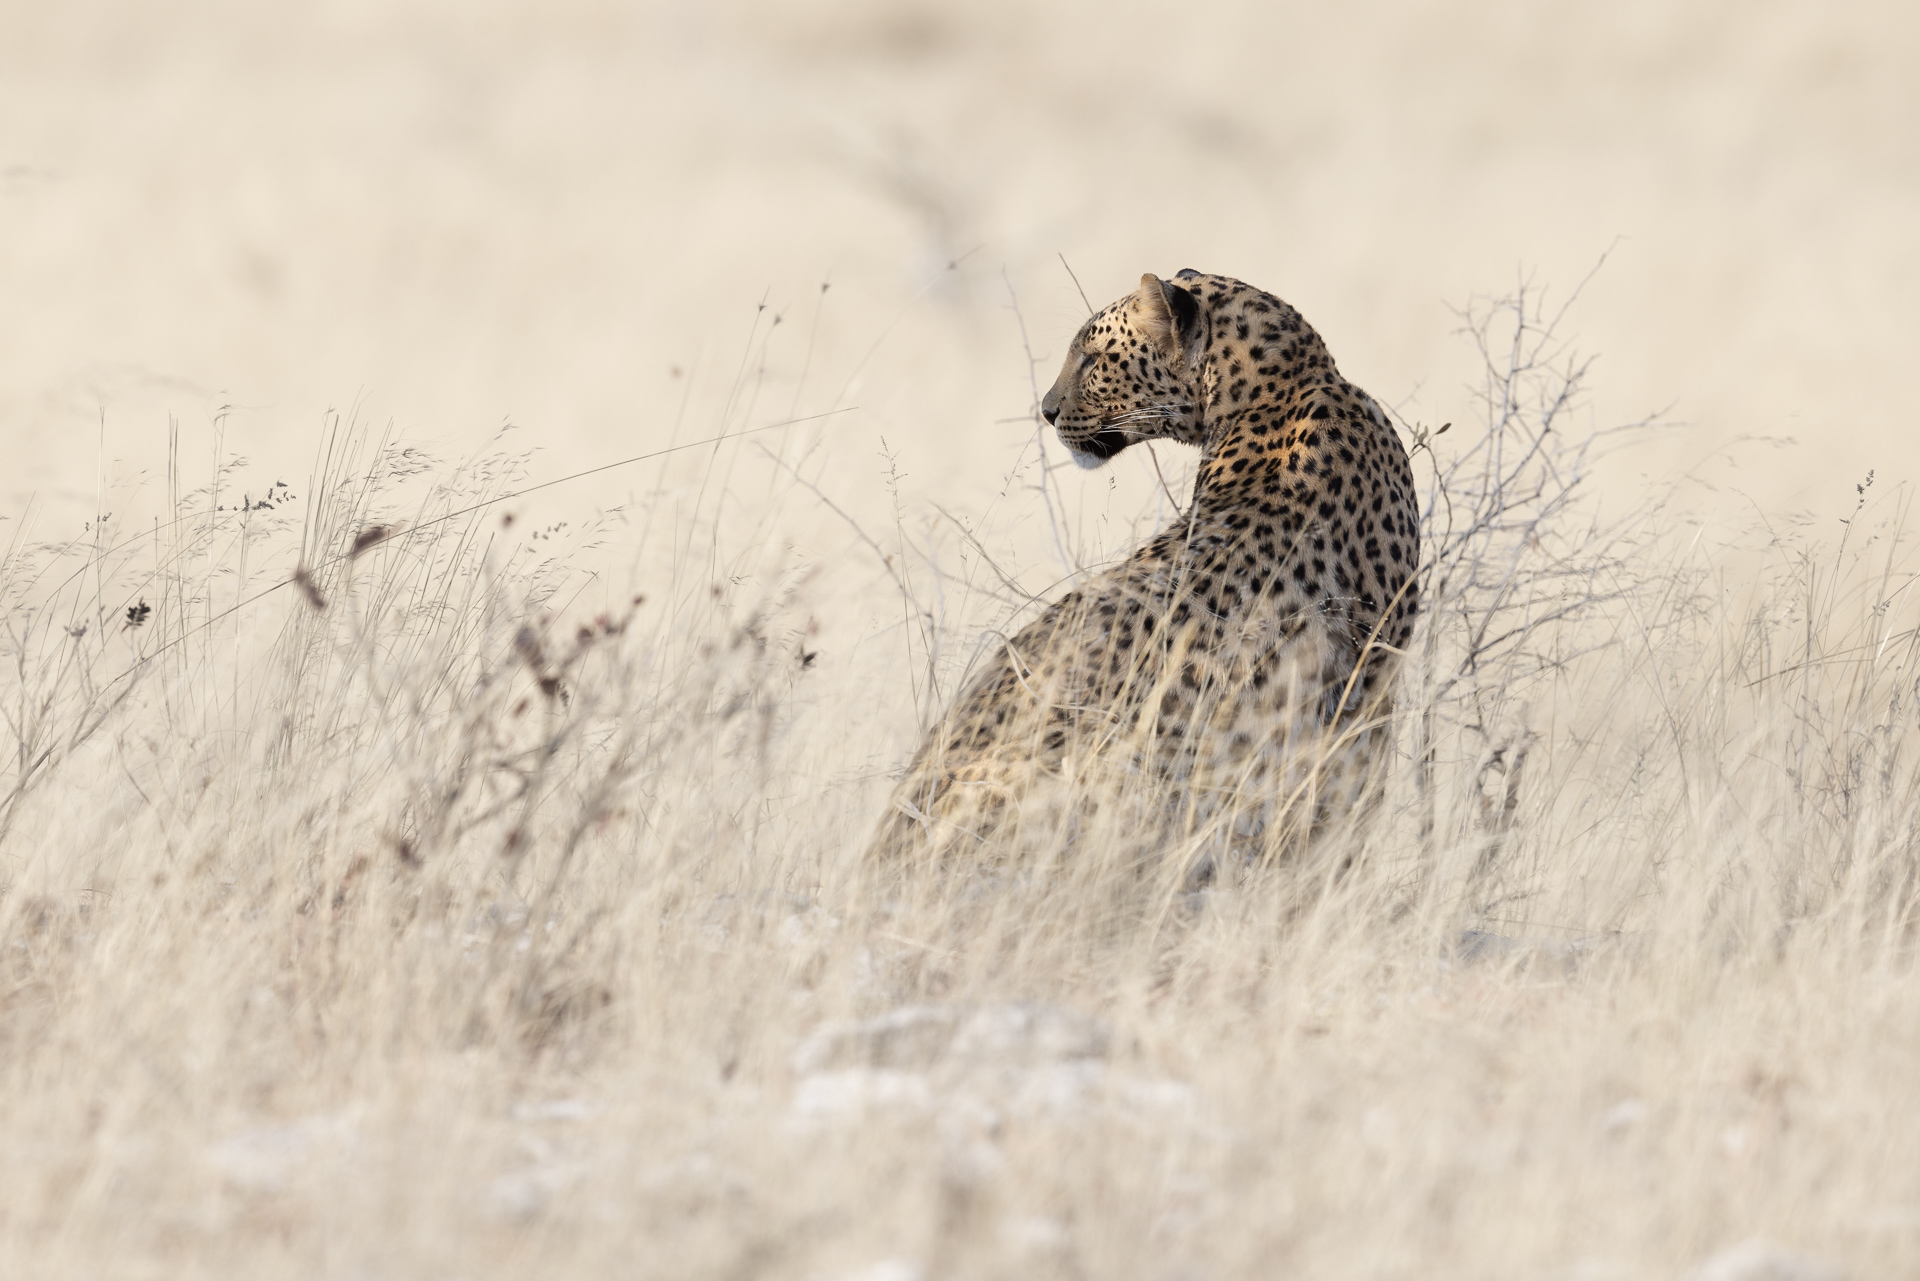 Leopard, Etosha National Park, Namibia